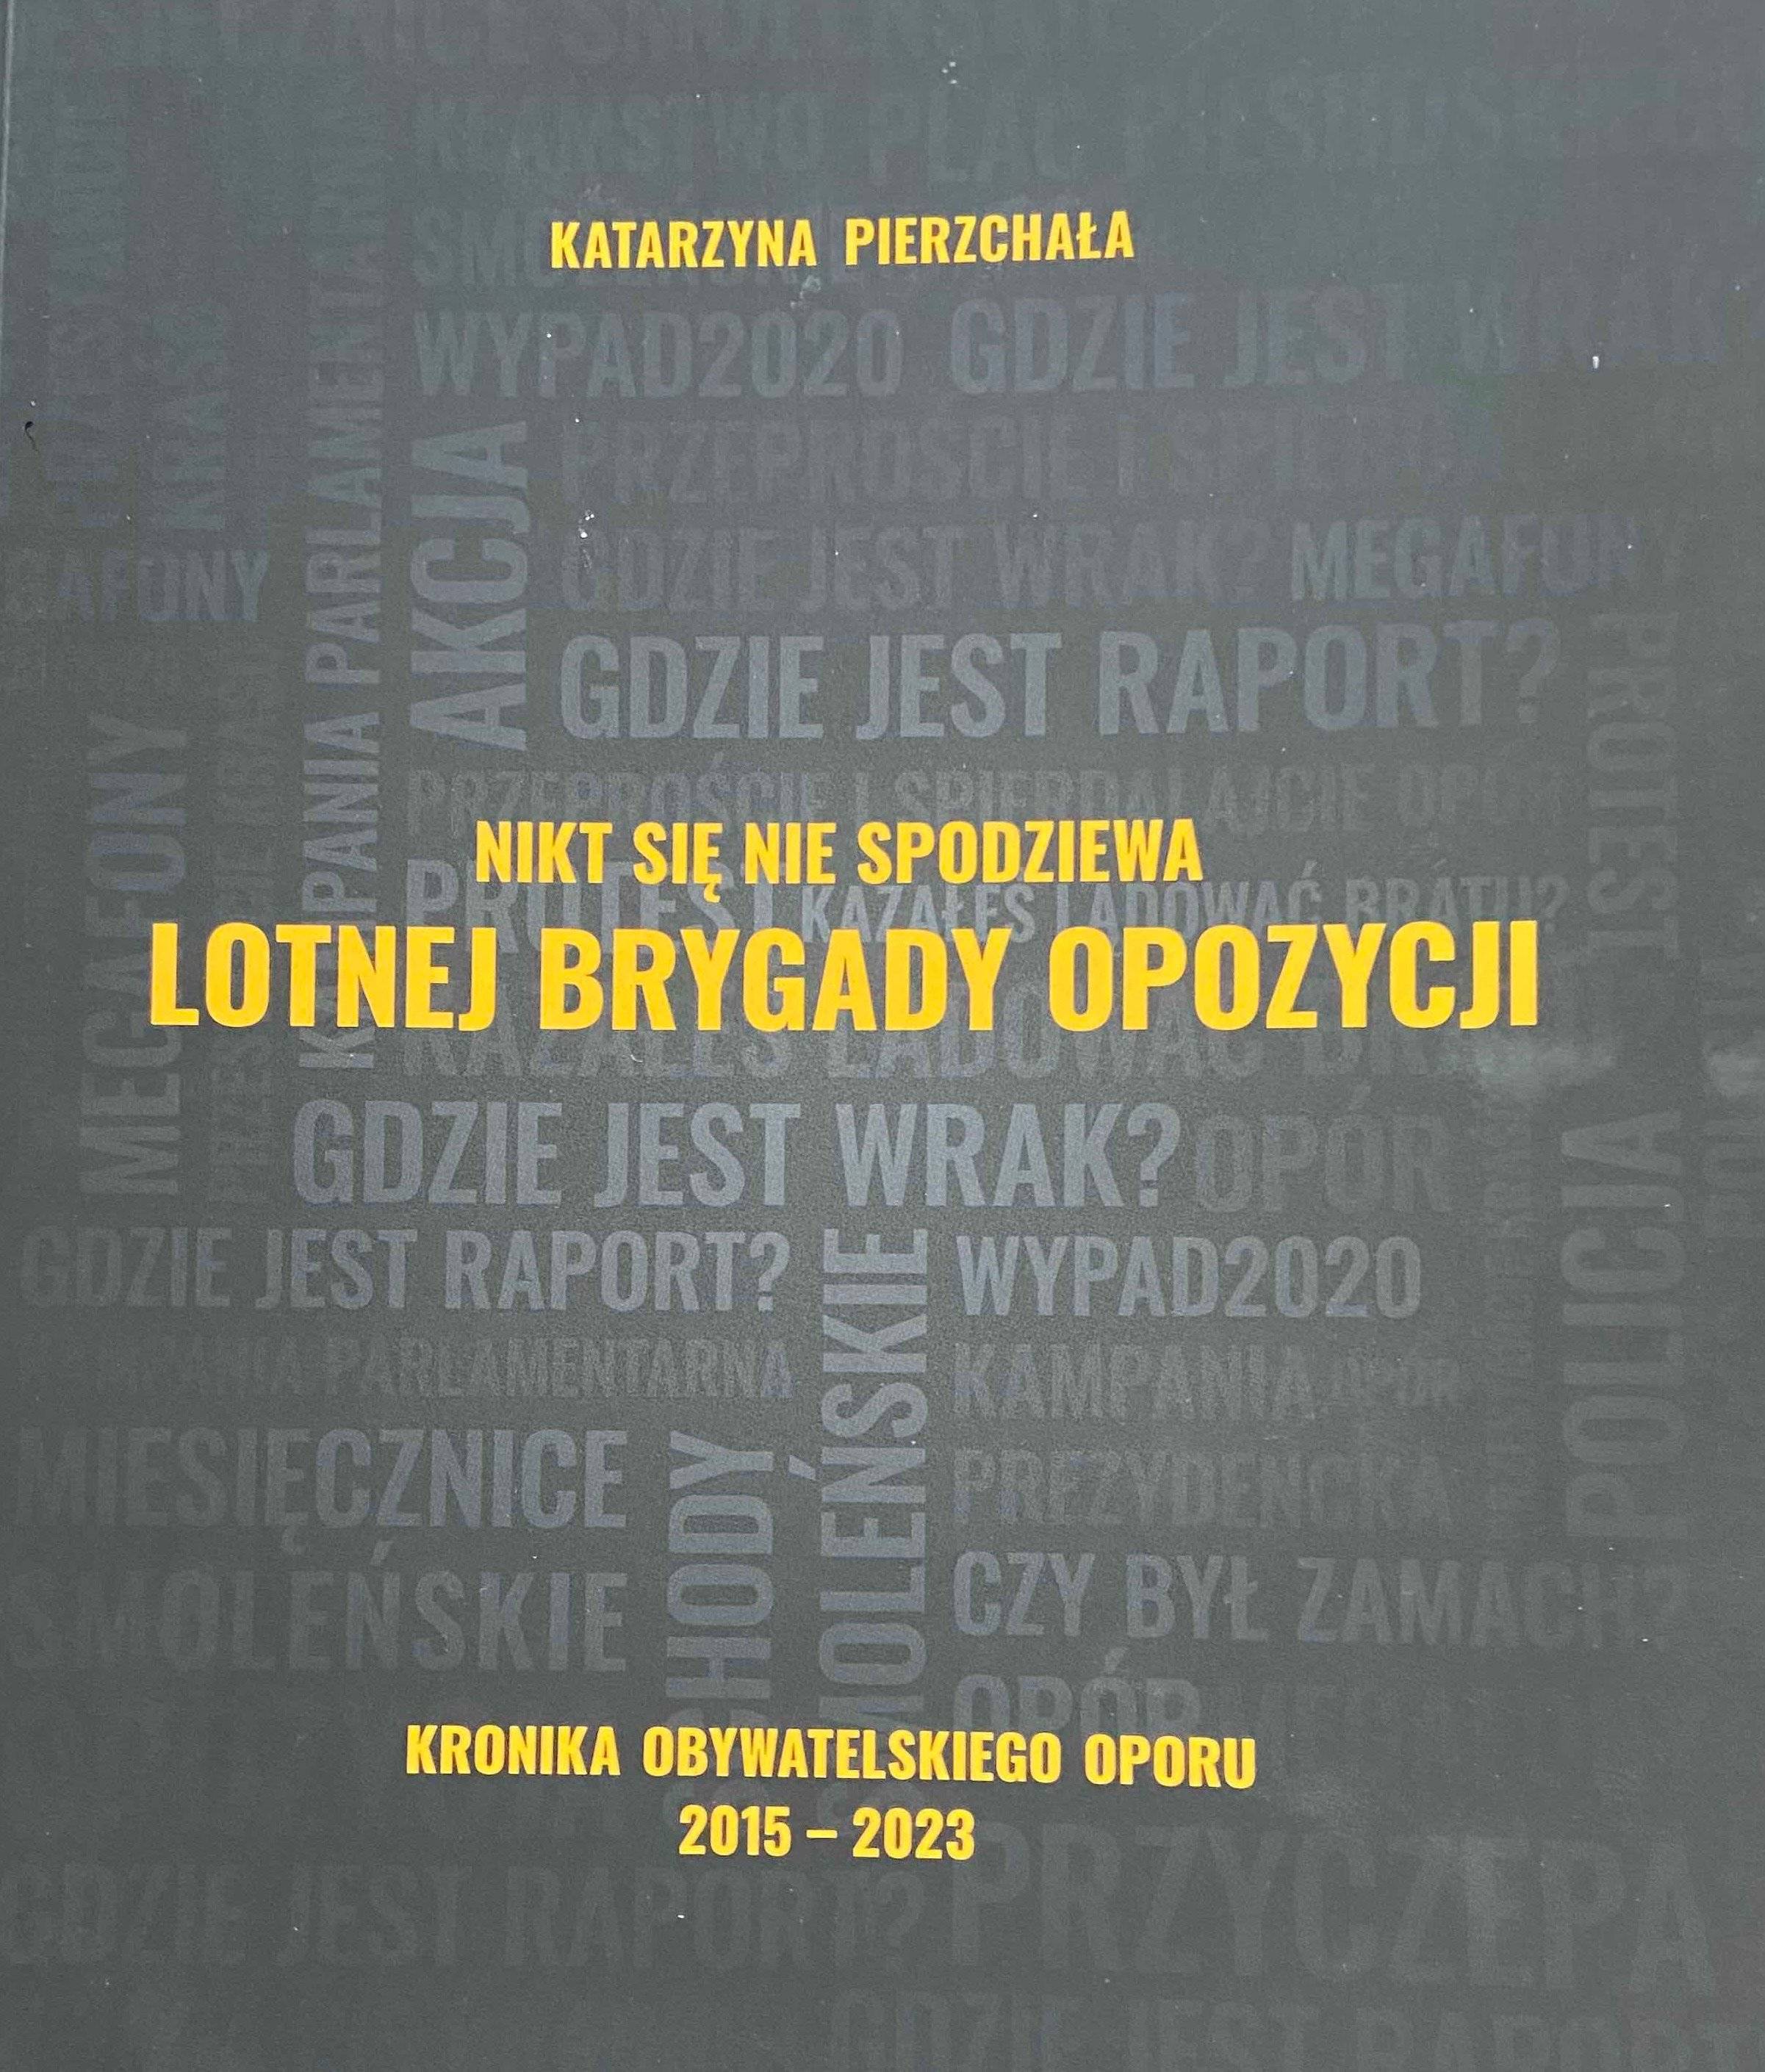 Działania Lotnej Brygady Opozycji doczekały się monografii, której autorką jest Katarzyna Pierzchała.